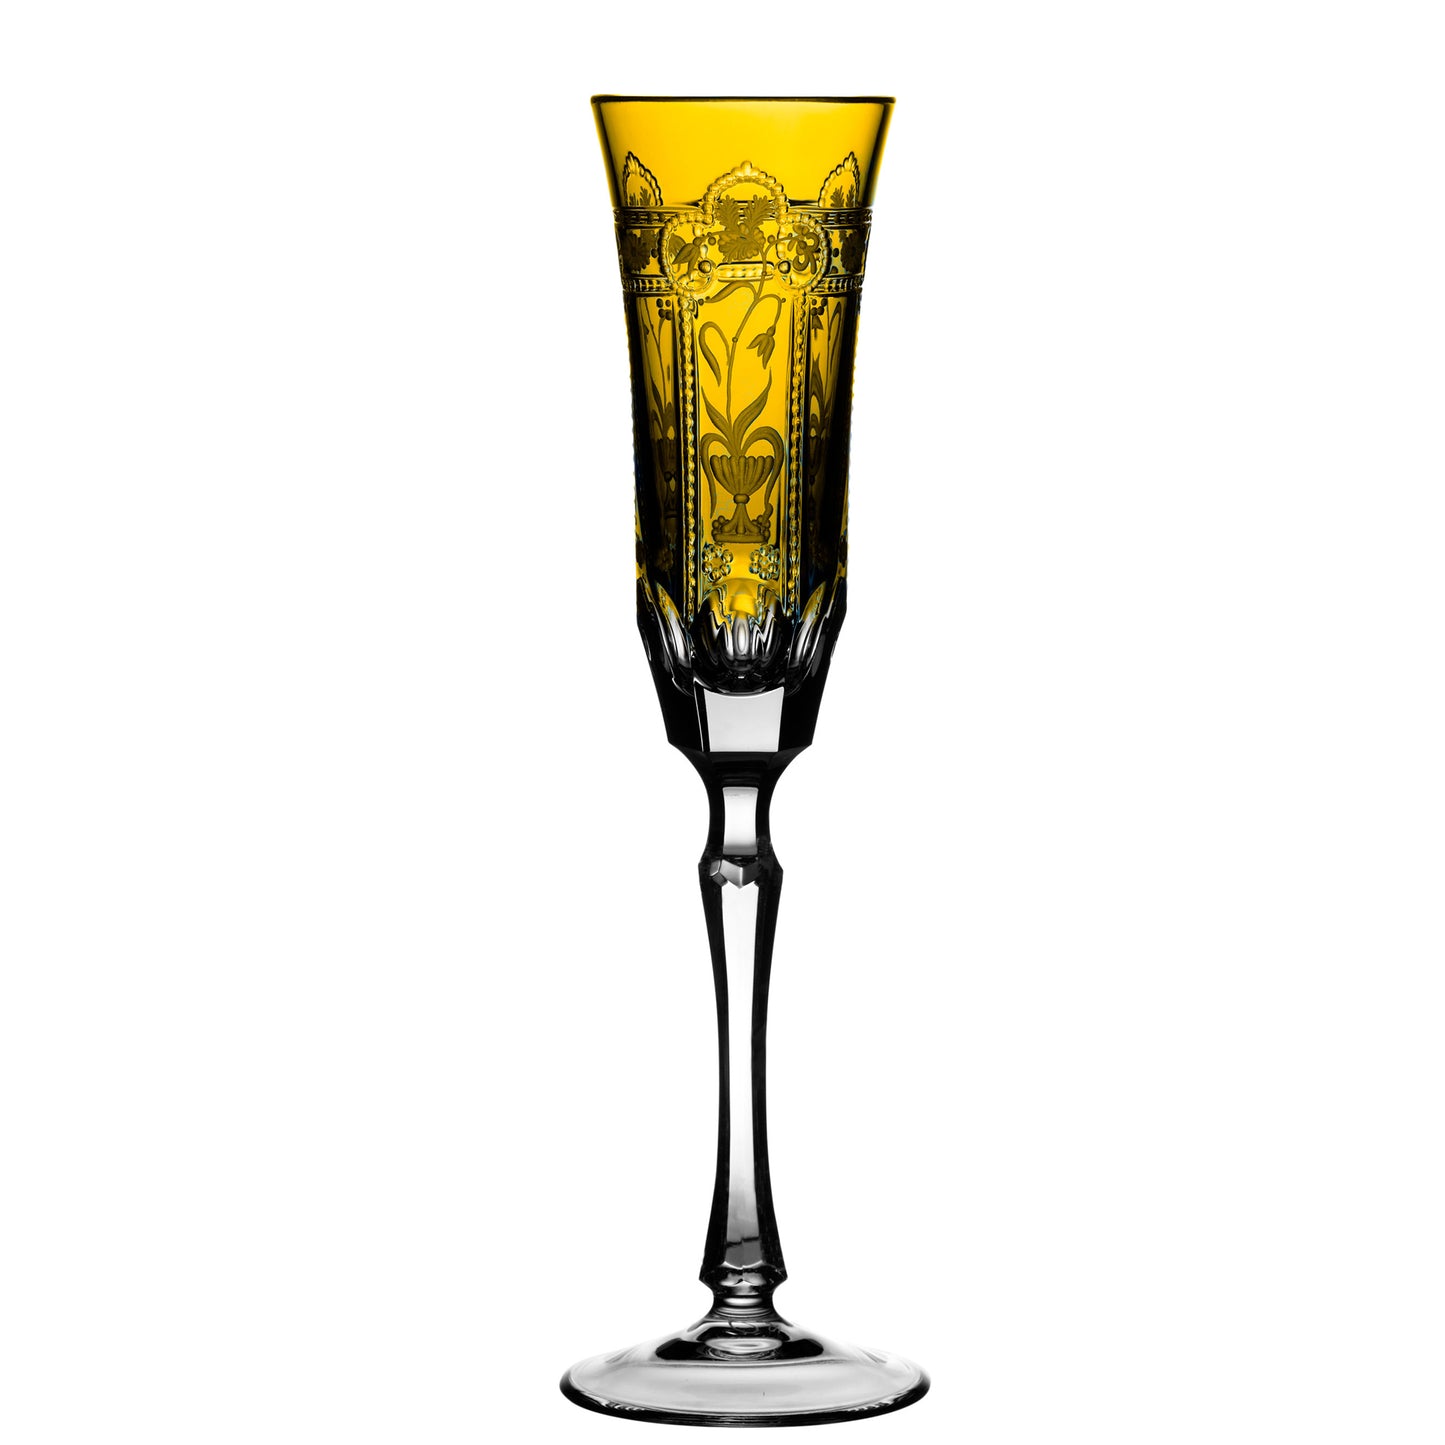 Varga Crystal Imperial Amber Champagne Flute Pressed Stem